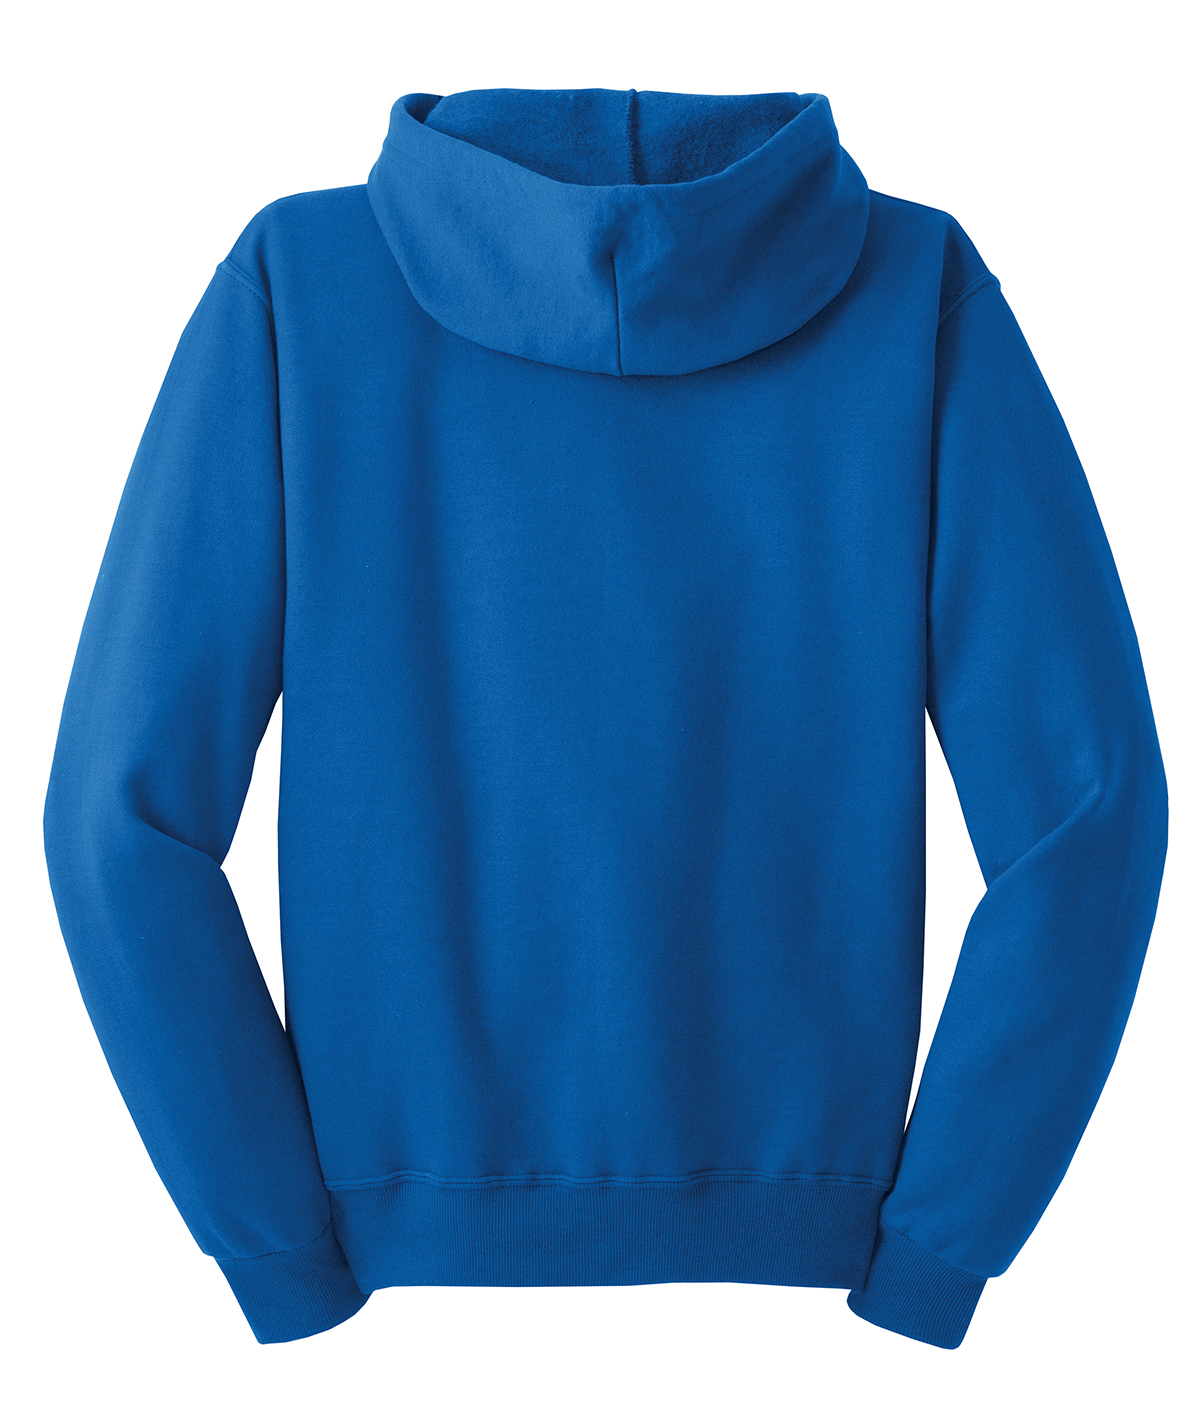 JERZEES - NuBlend Full-Zip Hooded Sweatshirt | Product | SanMar